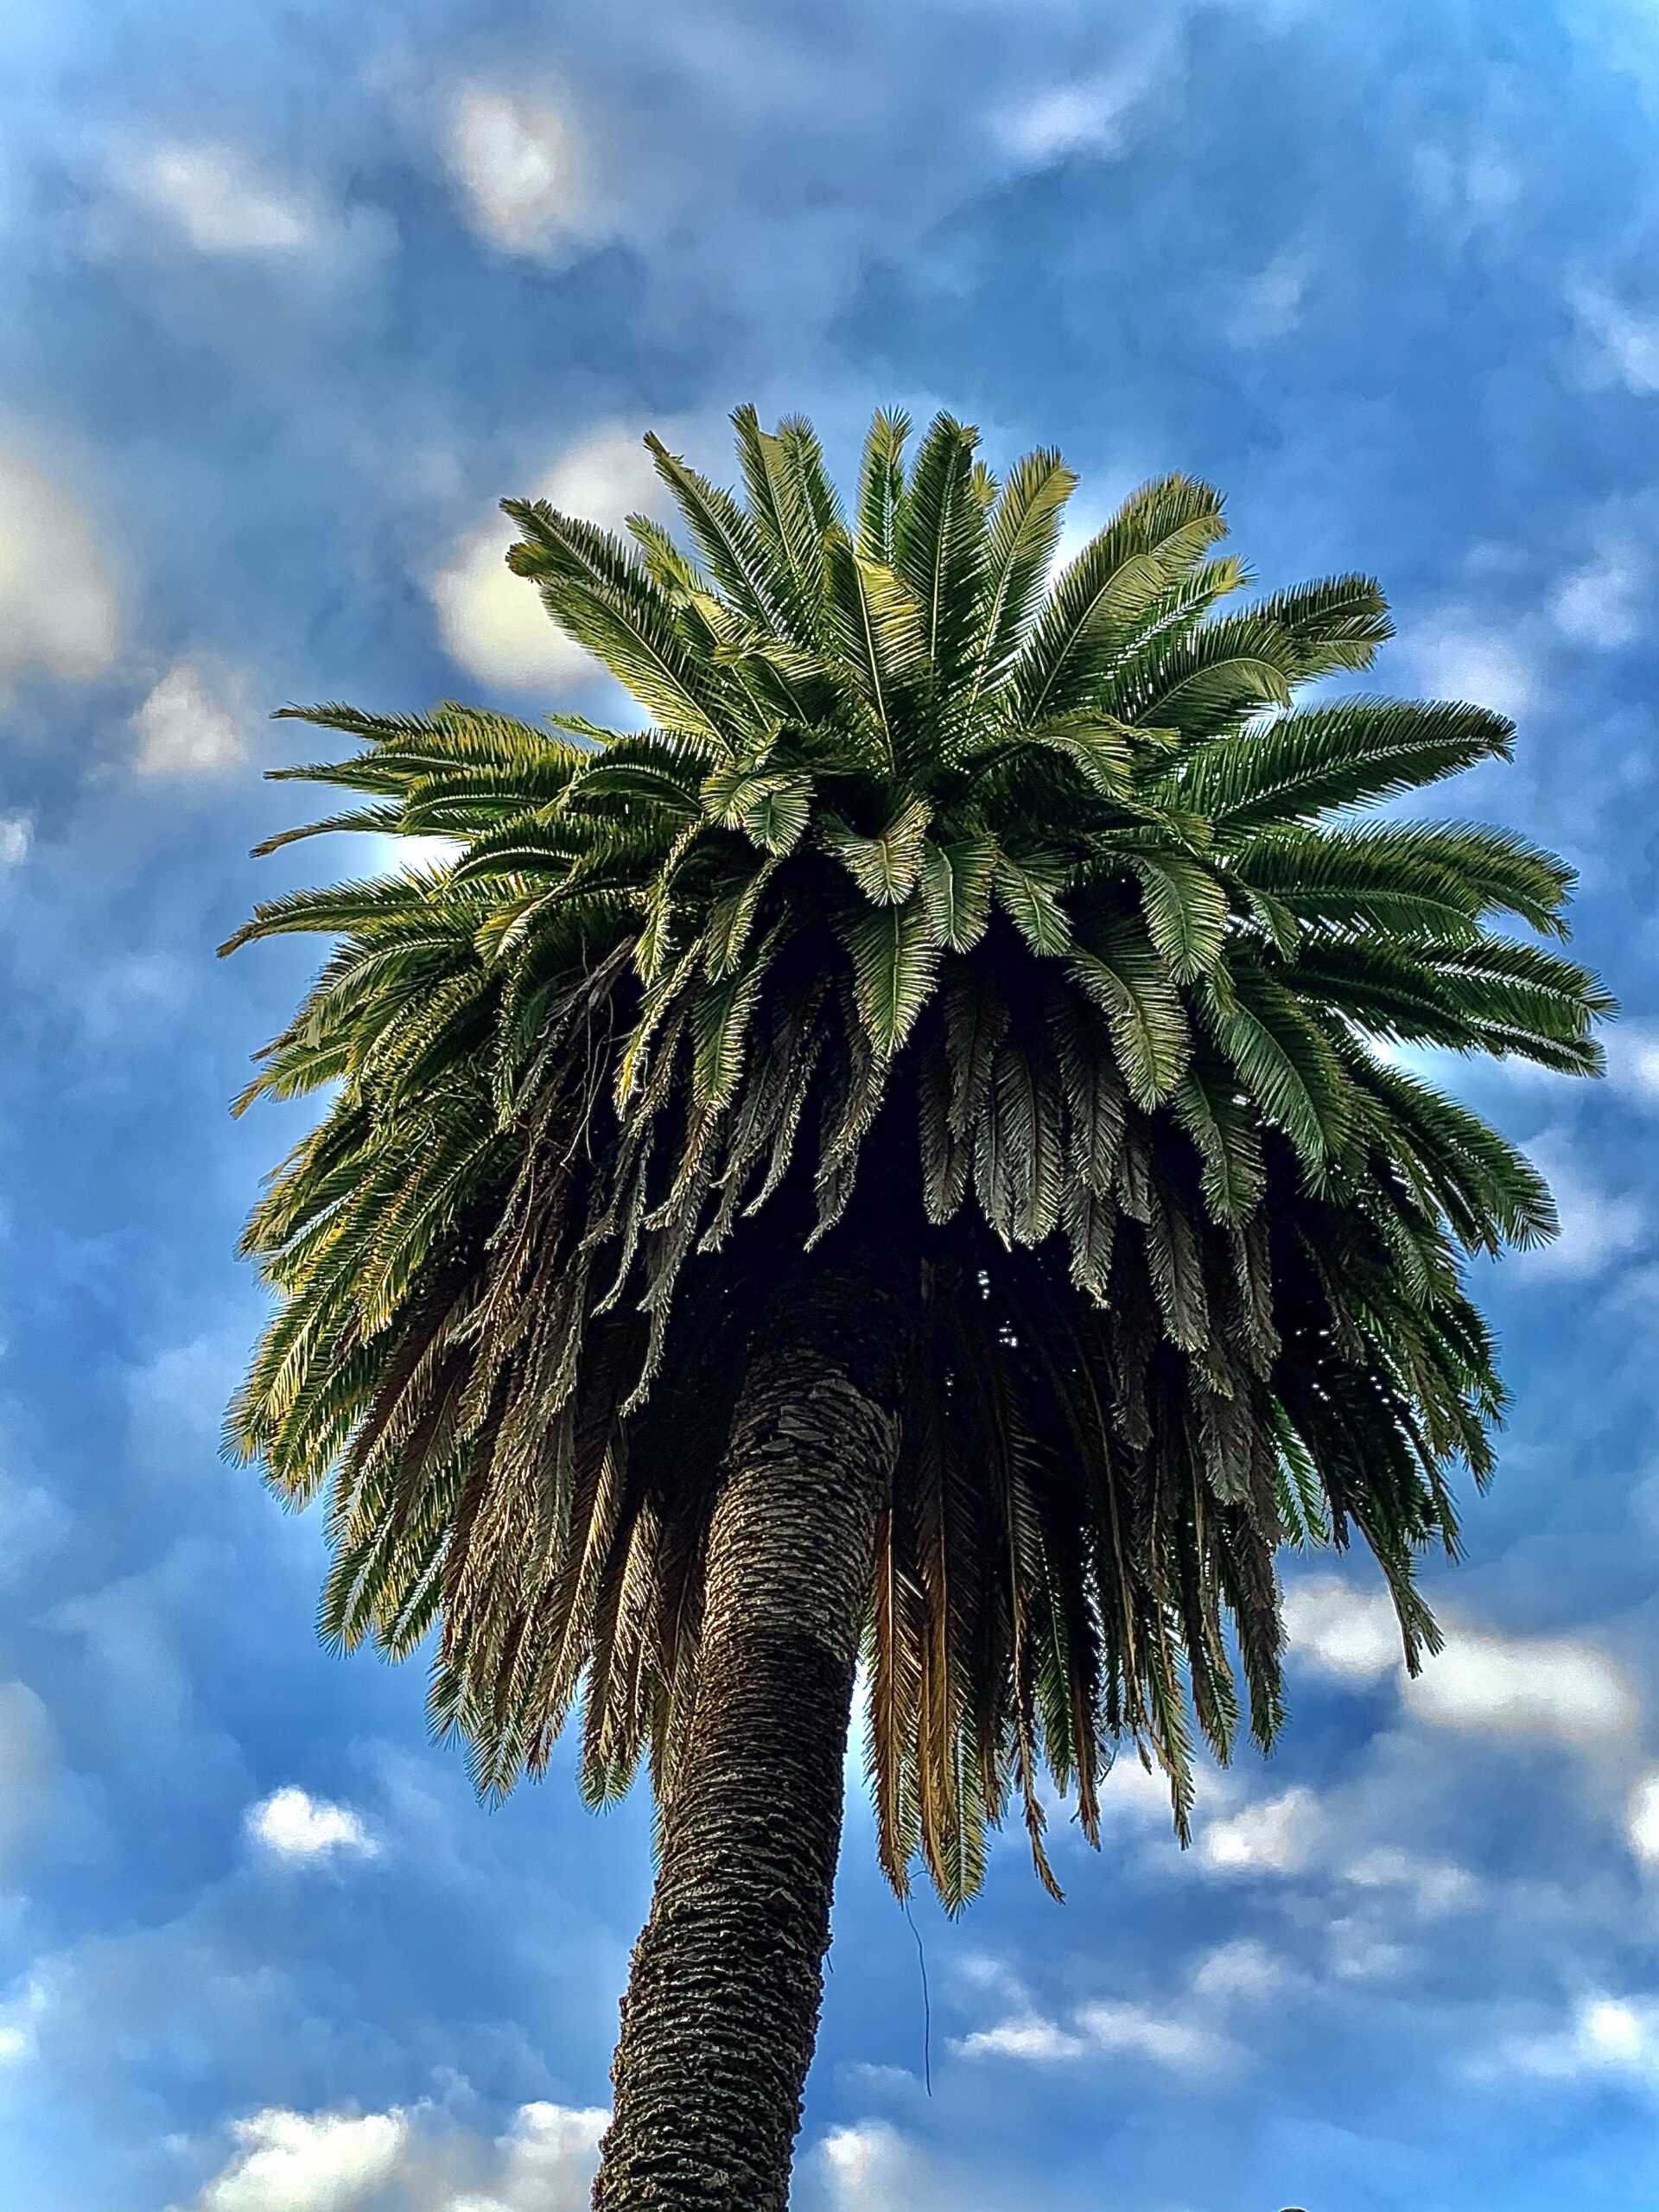 A palm tree against a blue sky.